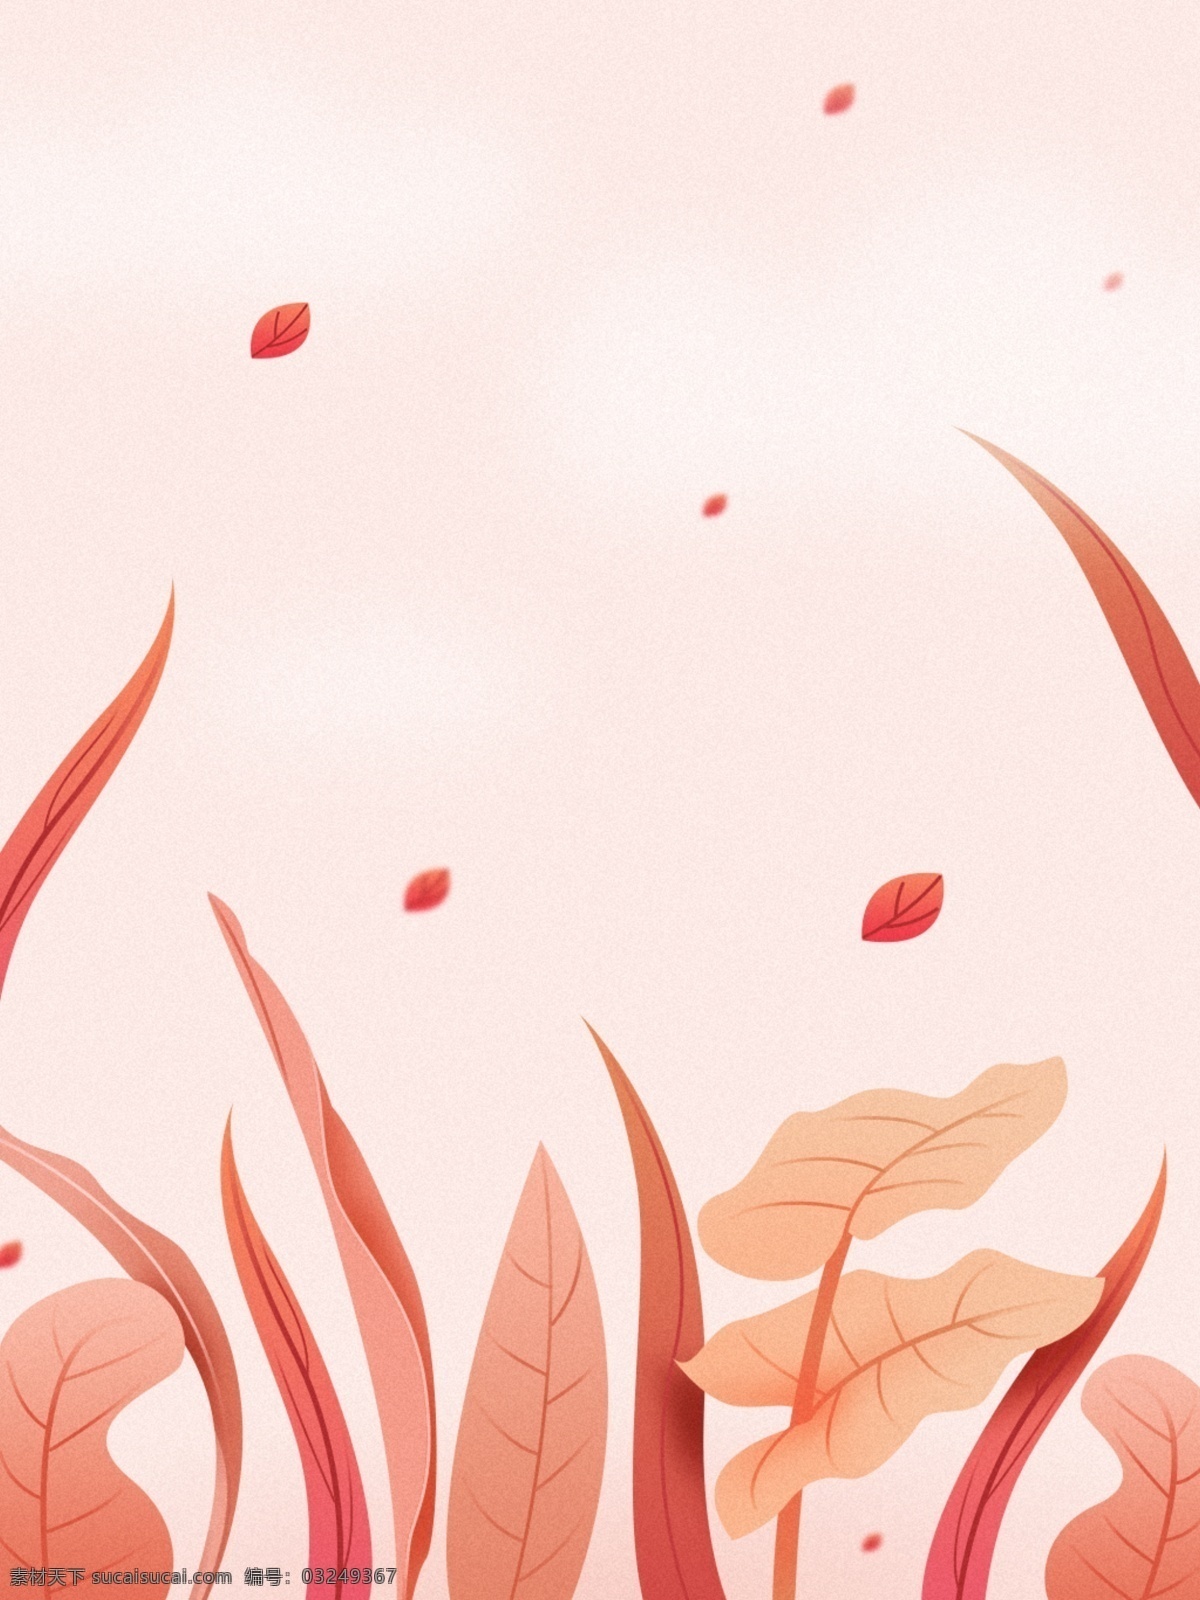 暖色调 叶子 飞扬 背景 暖色 红色调 植物 动感 小清新 手绘 插画